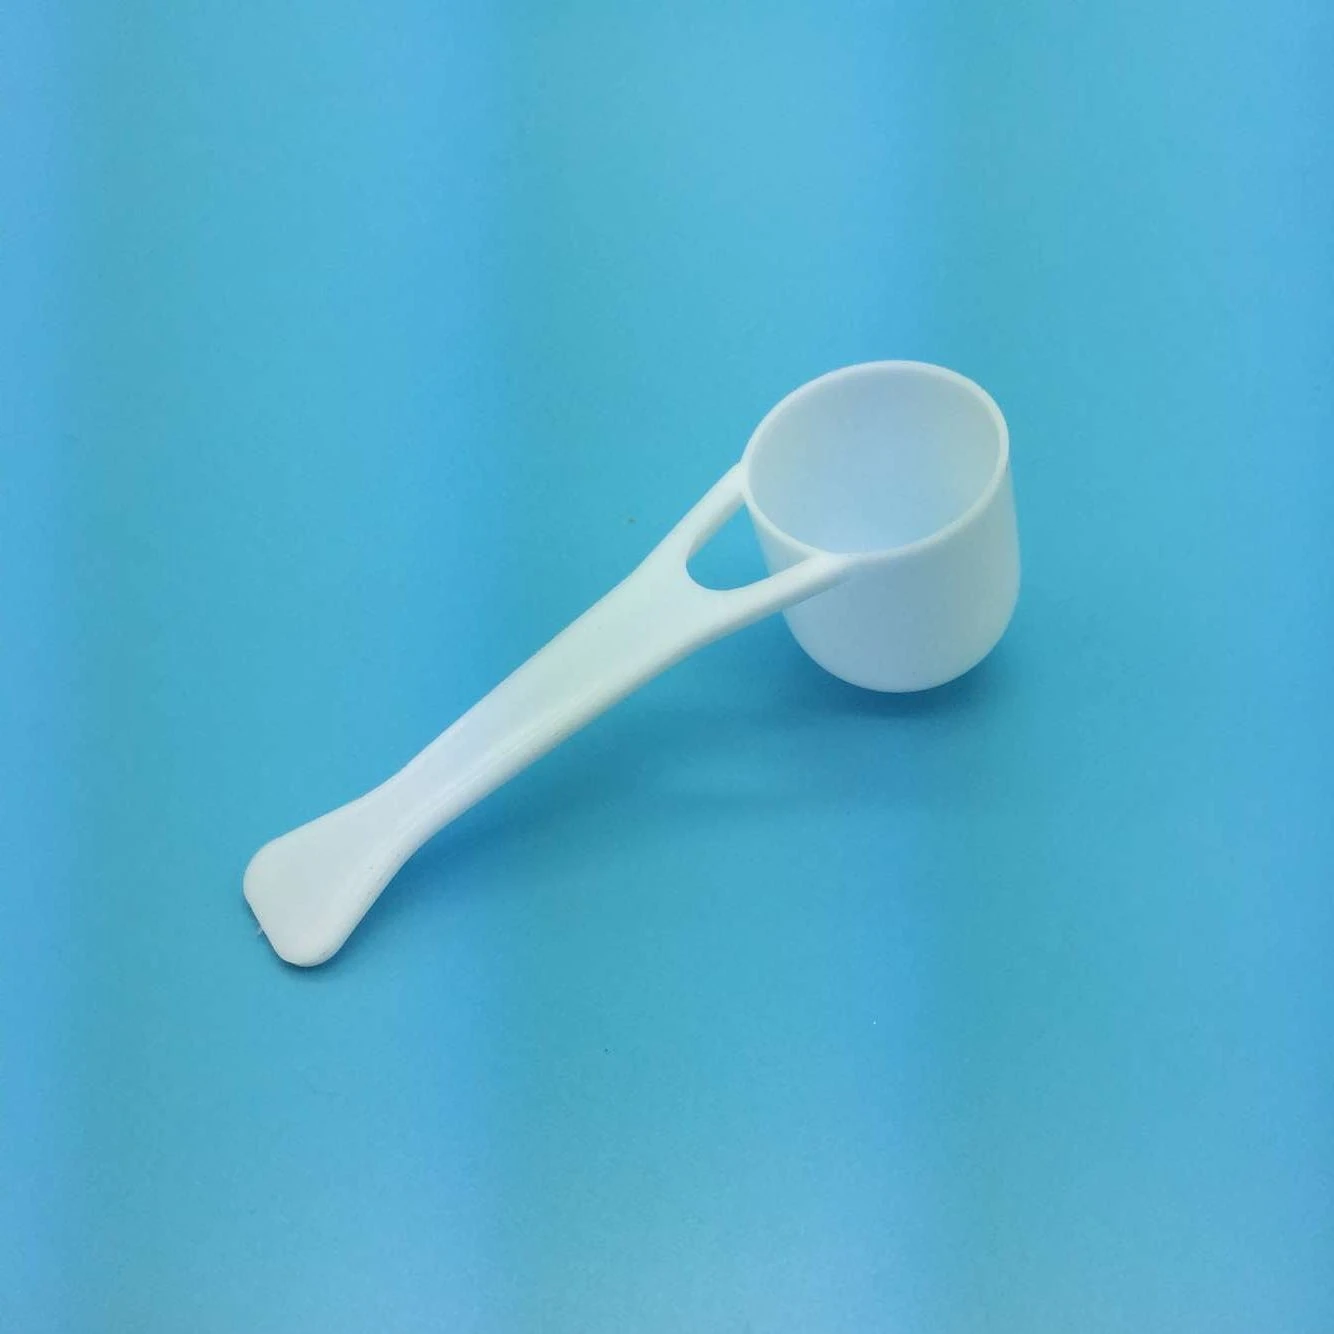 Hot Selling 60ml Lab Plastic Measuring Spoon 30g Measure Scoop